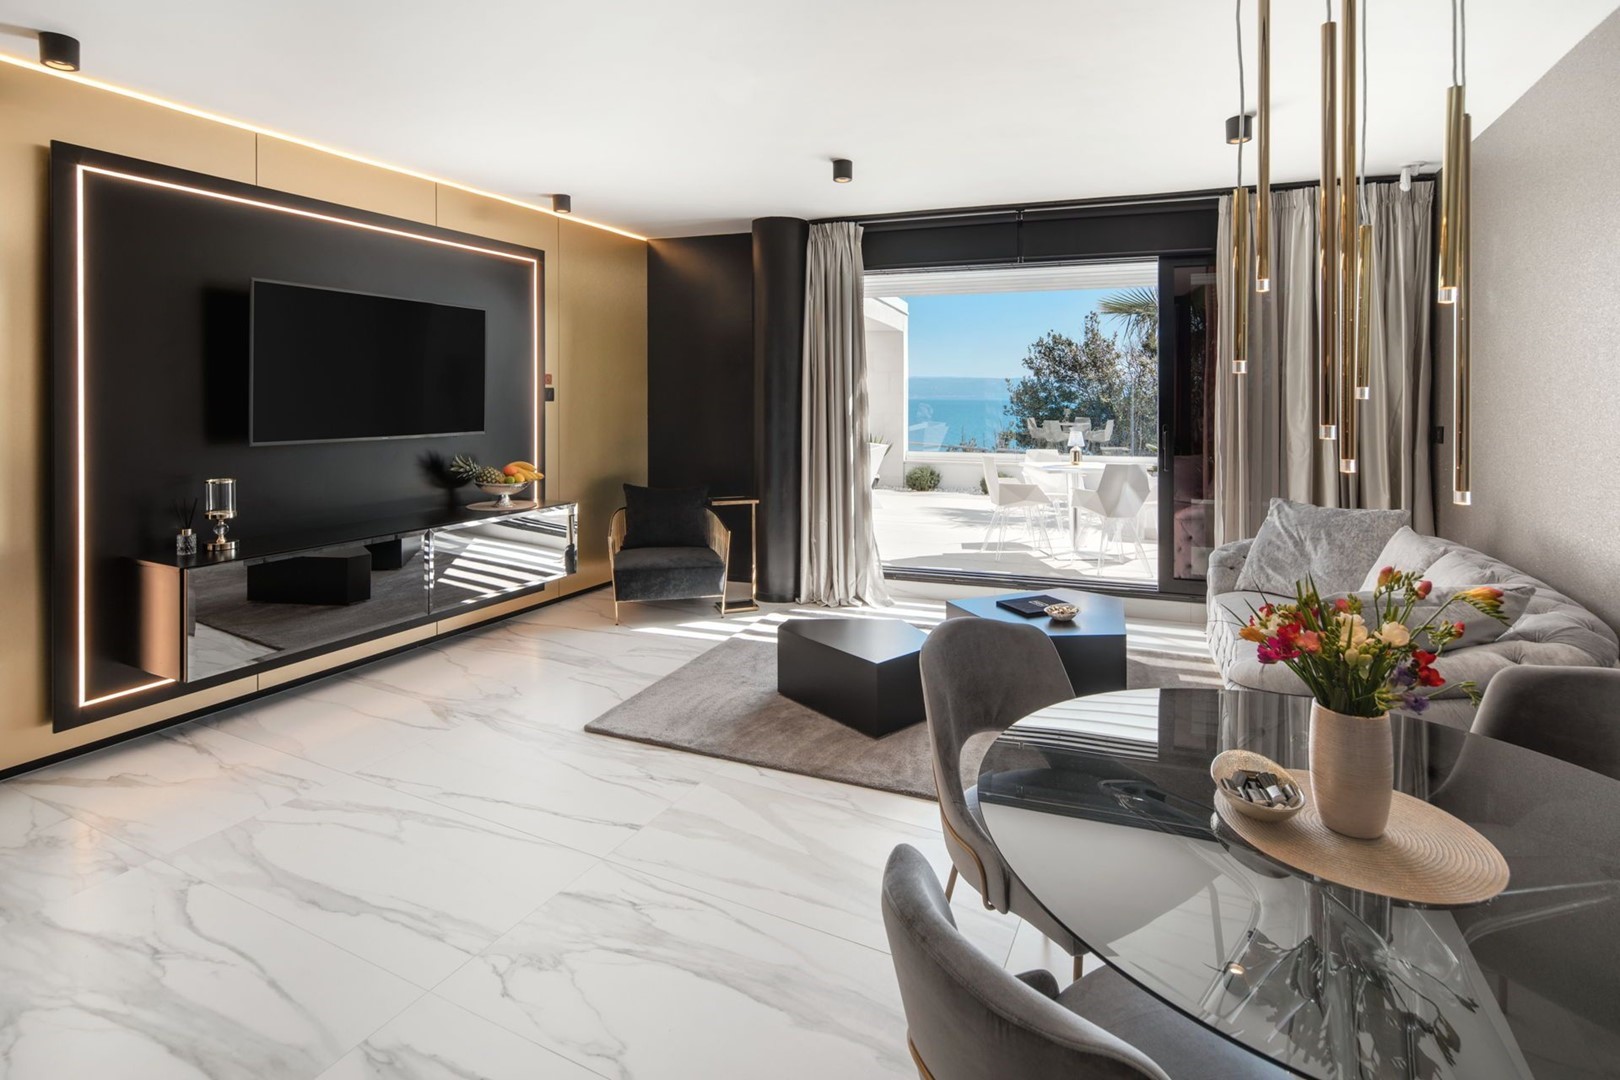 Ein modernes Wohnzimmer einer Luxuswohnung zur Miete mit einem bequemen Sofa, einem Couchtisch, einem LCD-Fernseher und einem eigenen Ausgang zur Terrasse